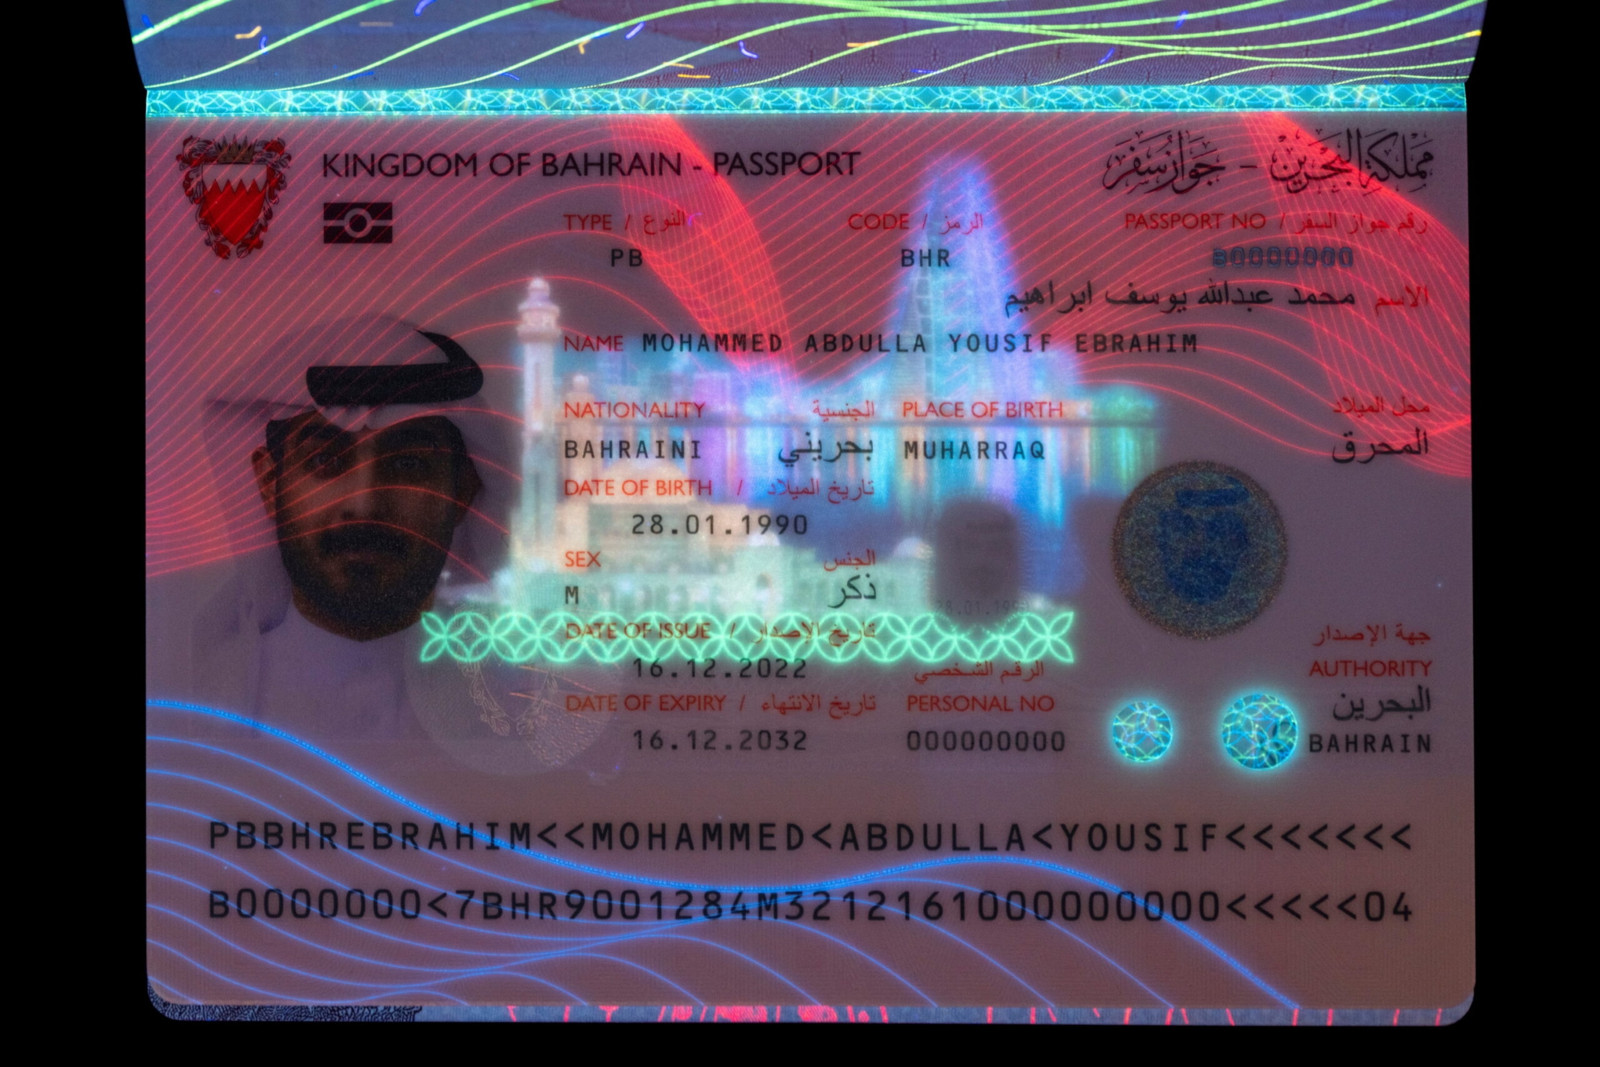 Die neue E-Passport-Lösung für das Königreich Bahrain soll die allgemeine Sicherheit sowie das weltweite Vertrauen in das Reisedokument erhöhen. 